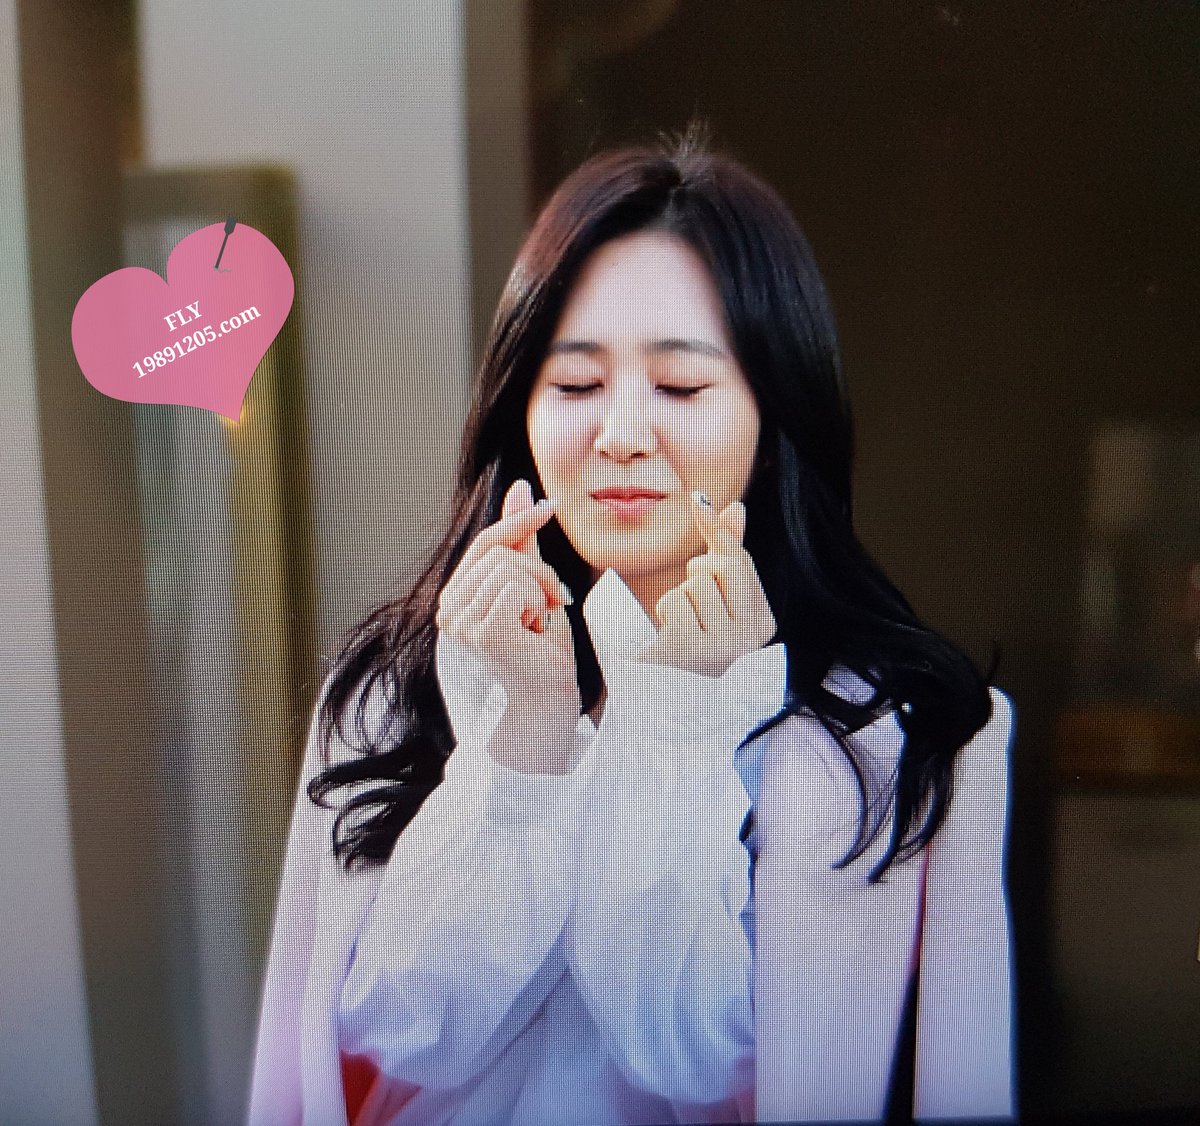 [PIC][09-10-2016]Yuri tham dự buổi Fansign thứ 2 cho thương hiệu nước hoa "BVLGARI Rose Goldea" tại Myeongdong Lotte Duty Free vào chiều nay - Page 4 CuT36eIUMAAzqOi